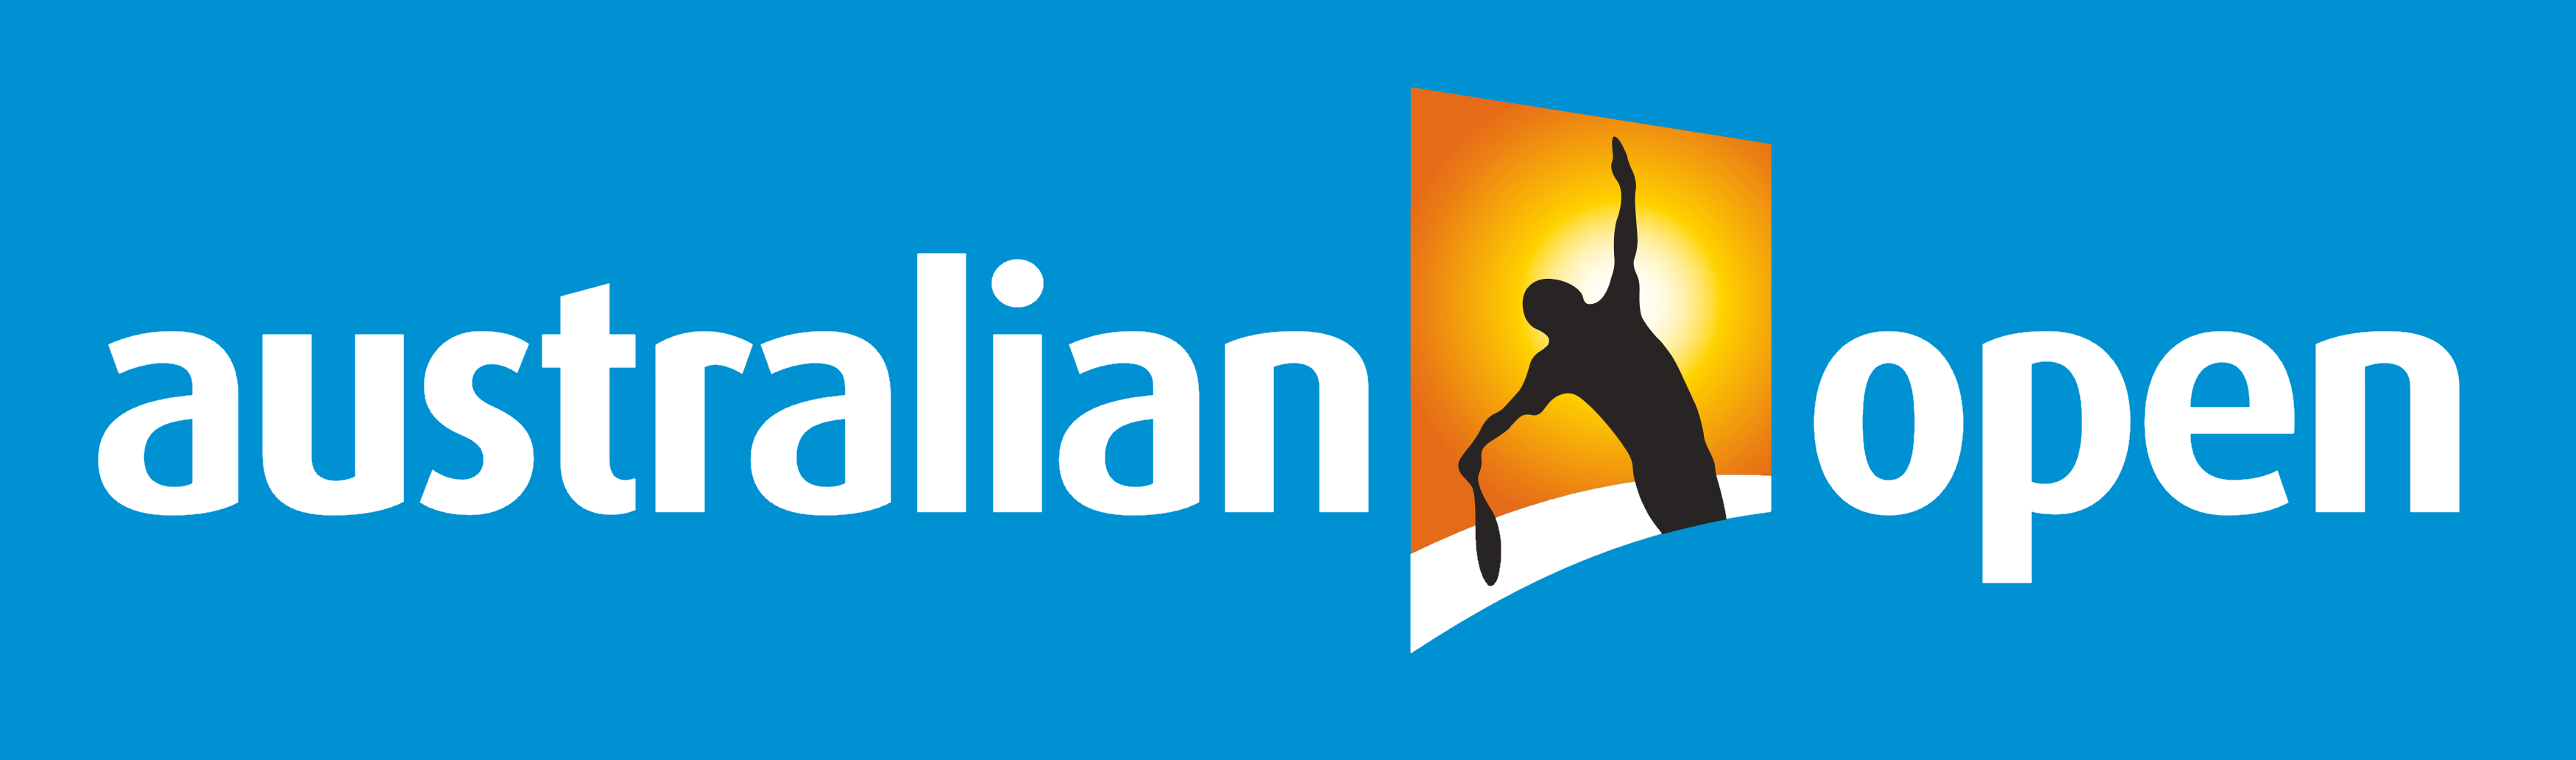 Australian Open logo, logotype